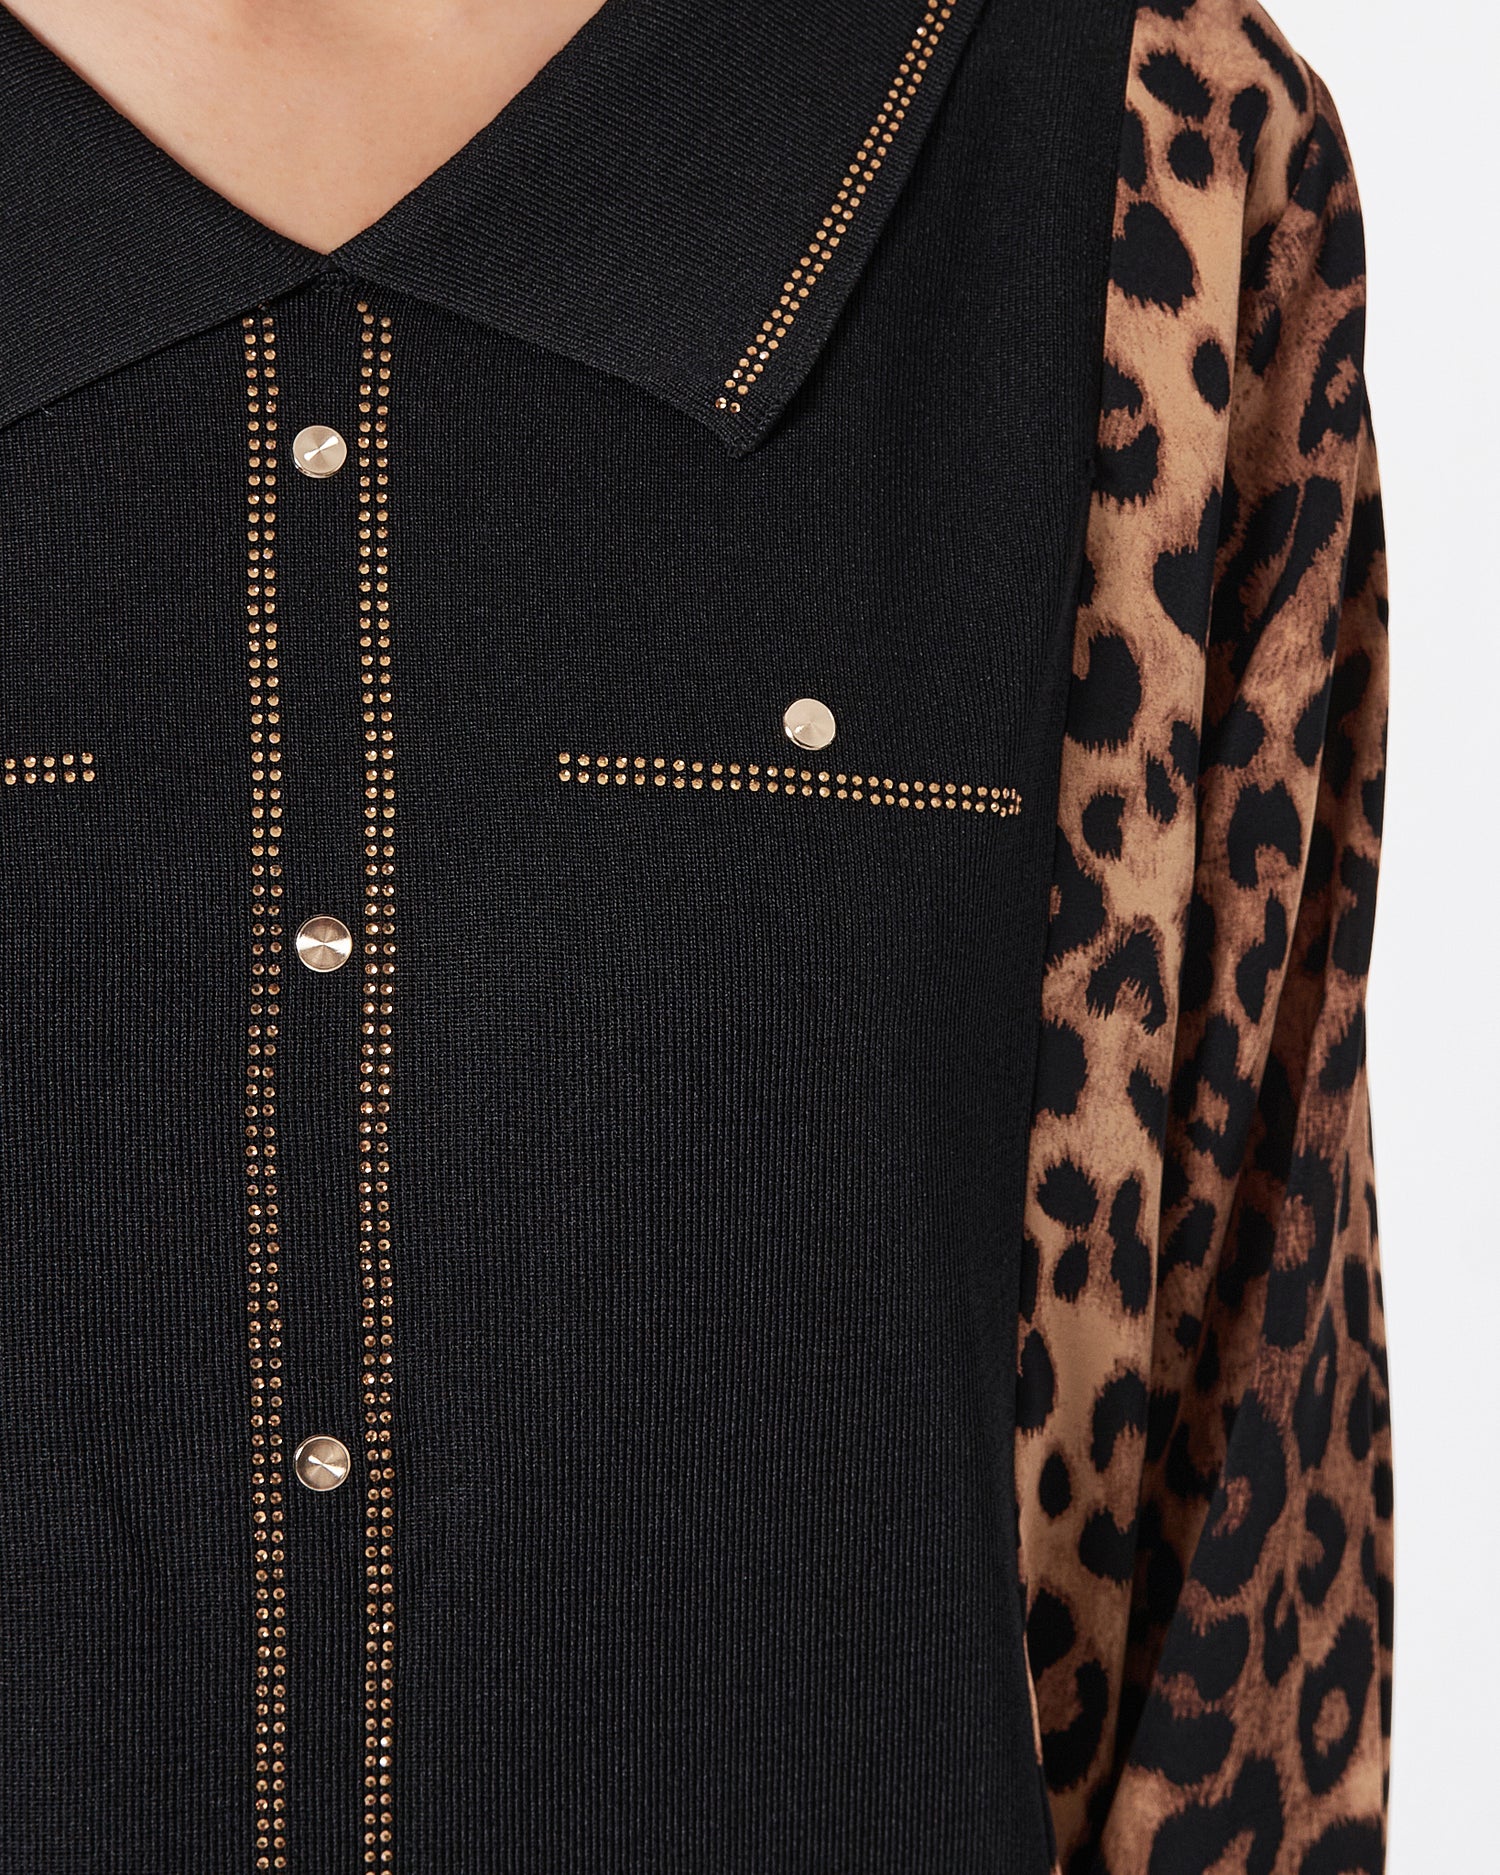 Leopard Lady  Sweater 29.90